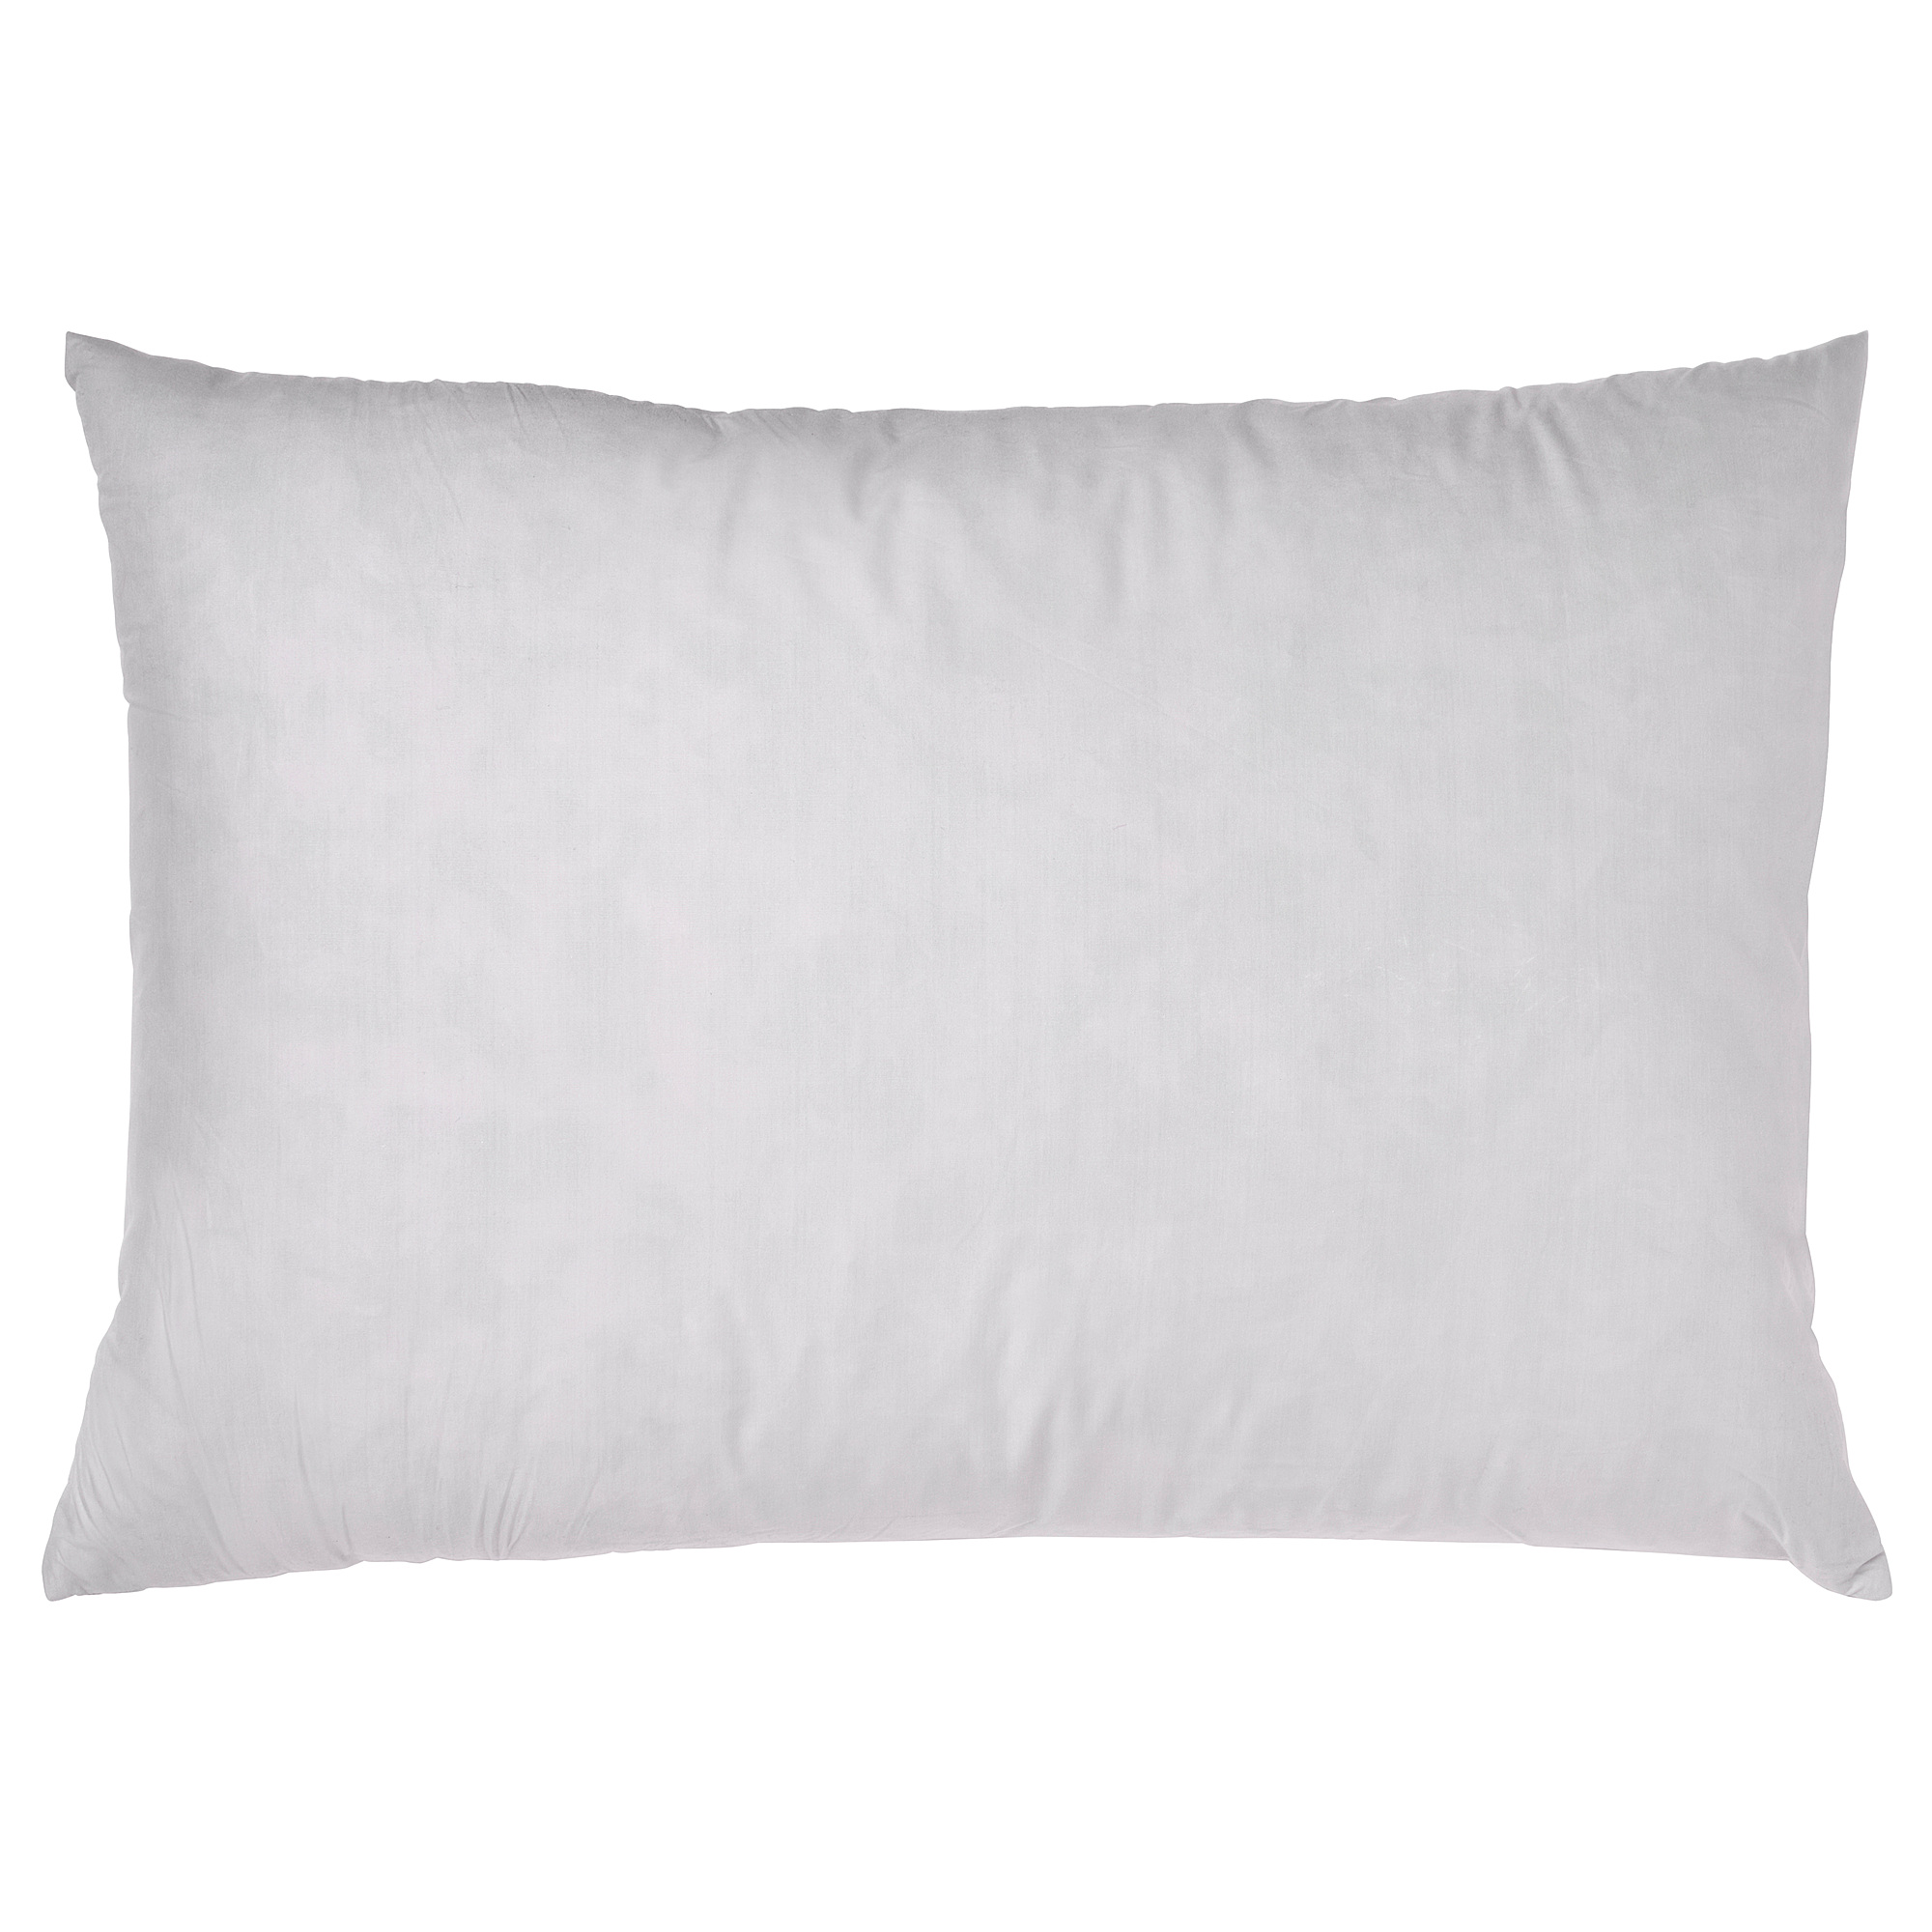 FJÄDRAR cushion pad